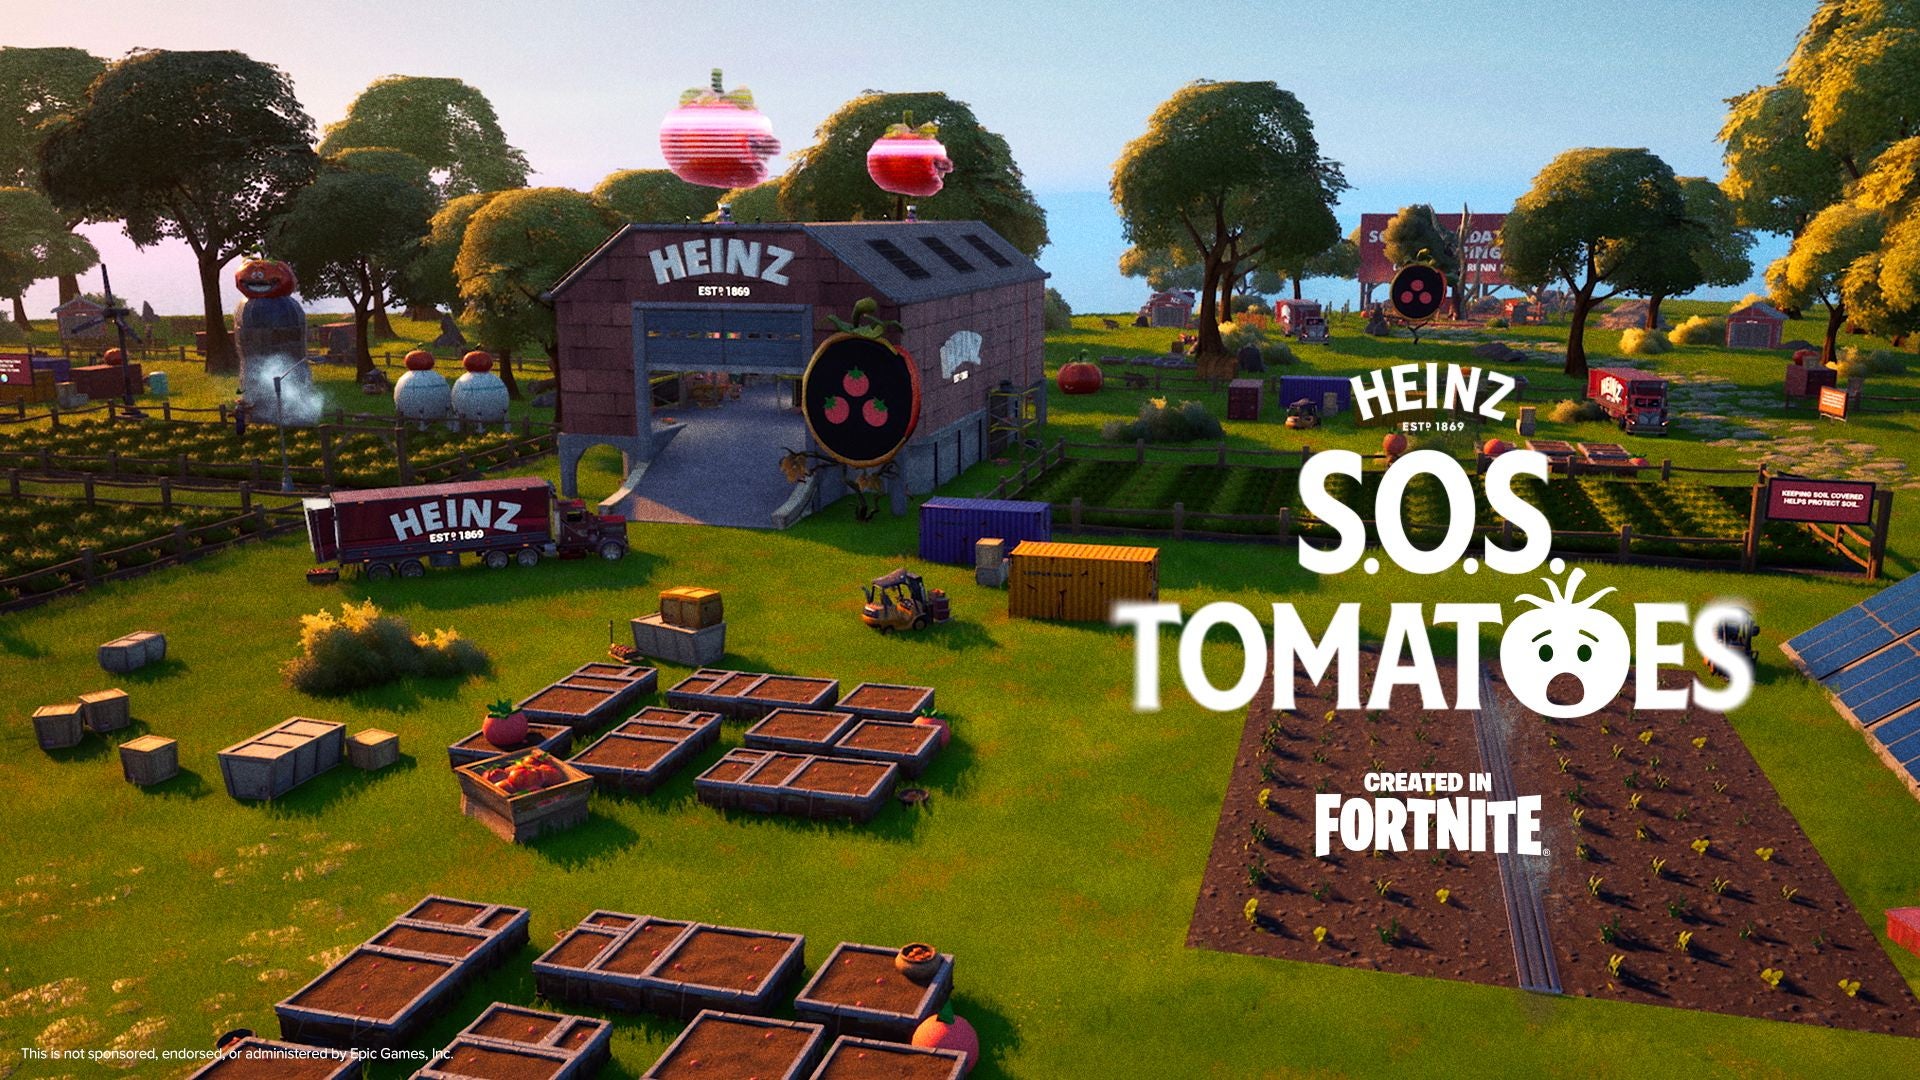 Tomat Fortnite Heinz SOS.